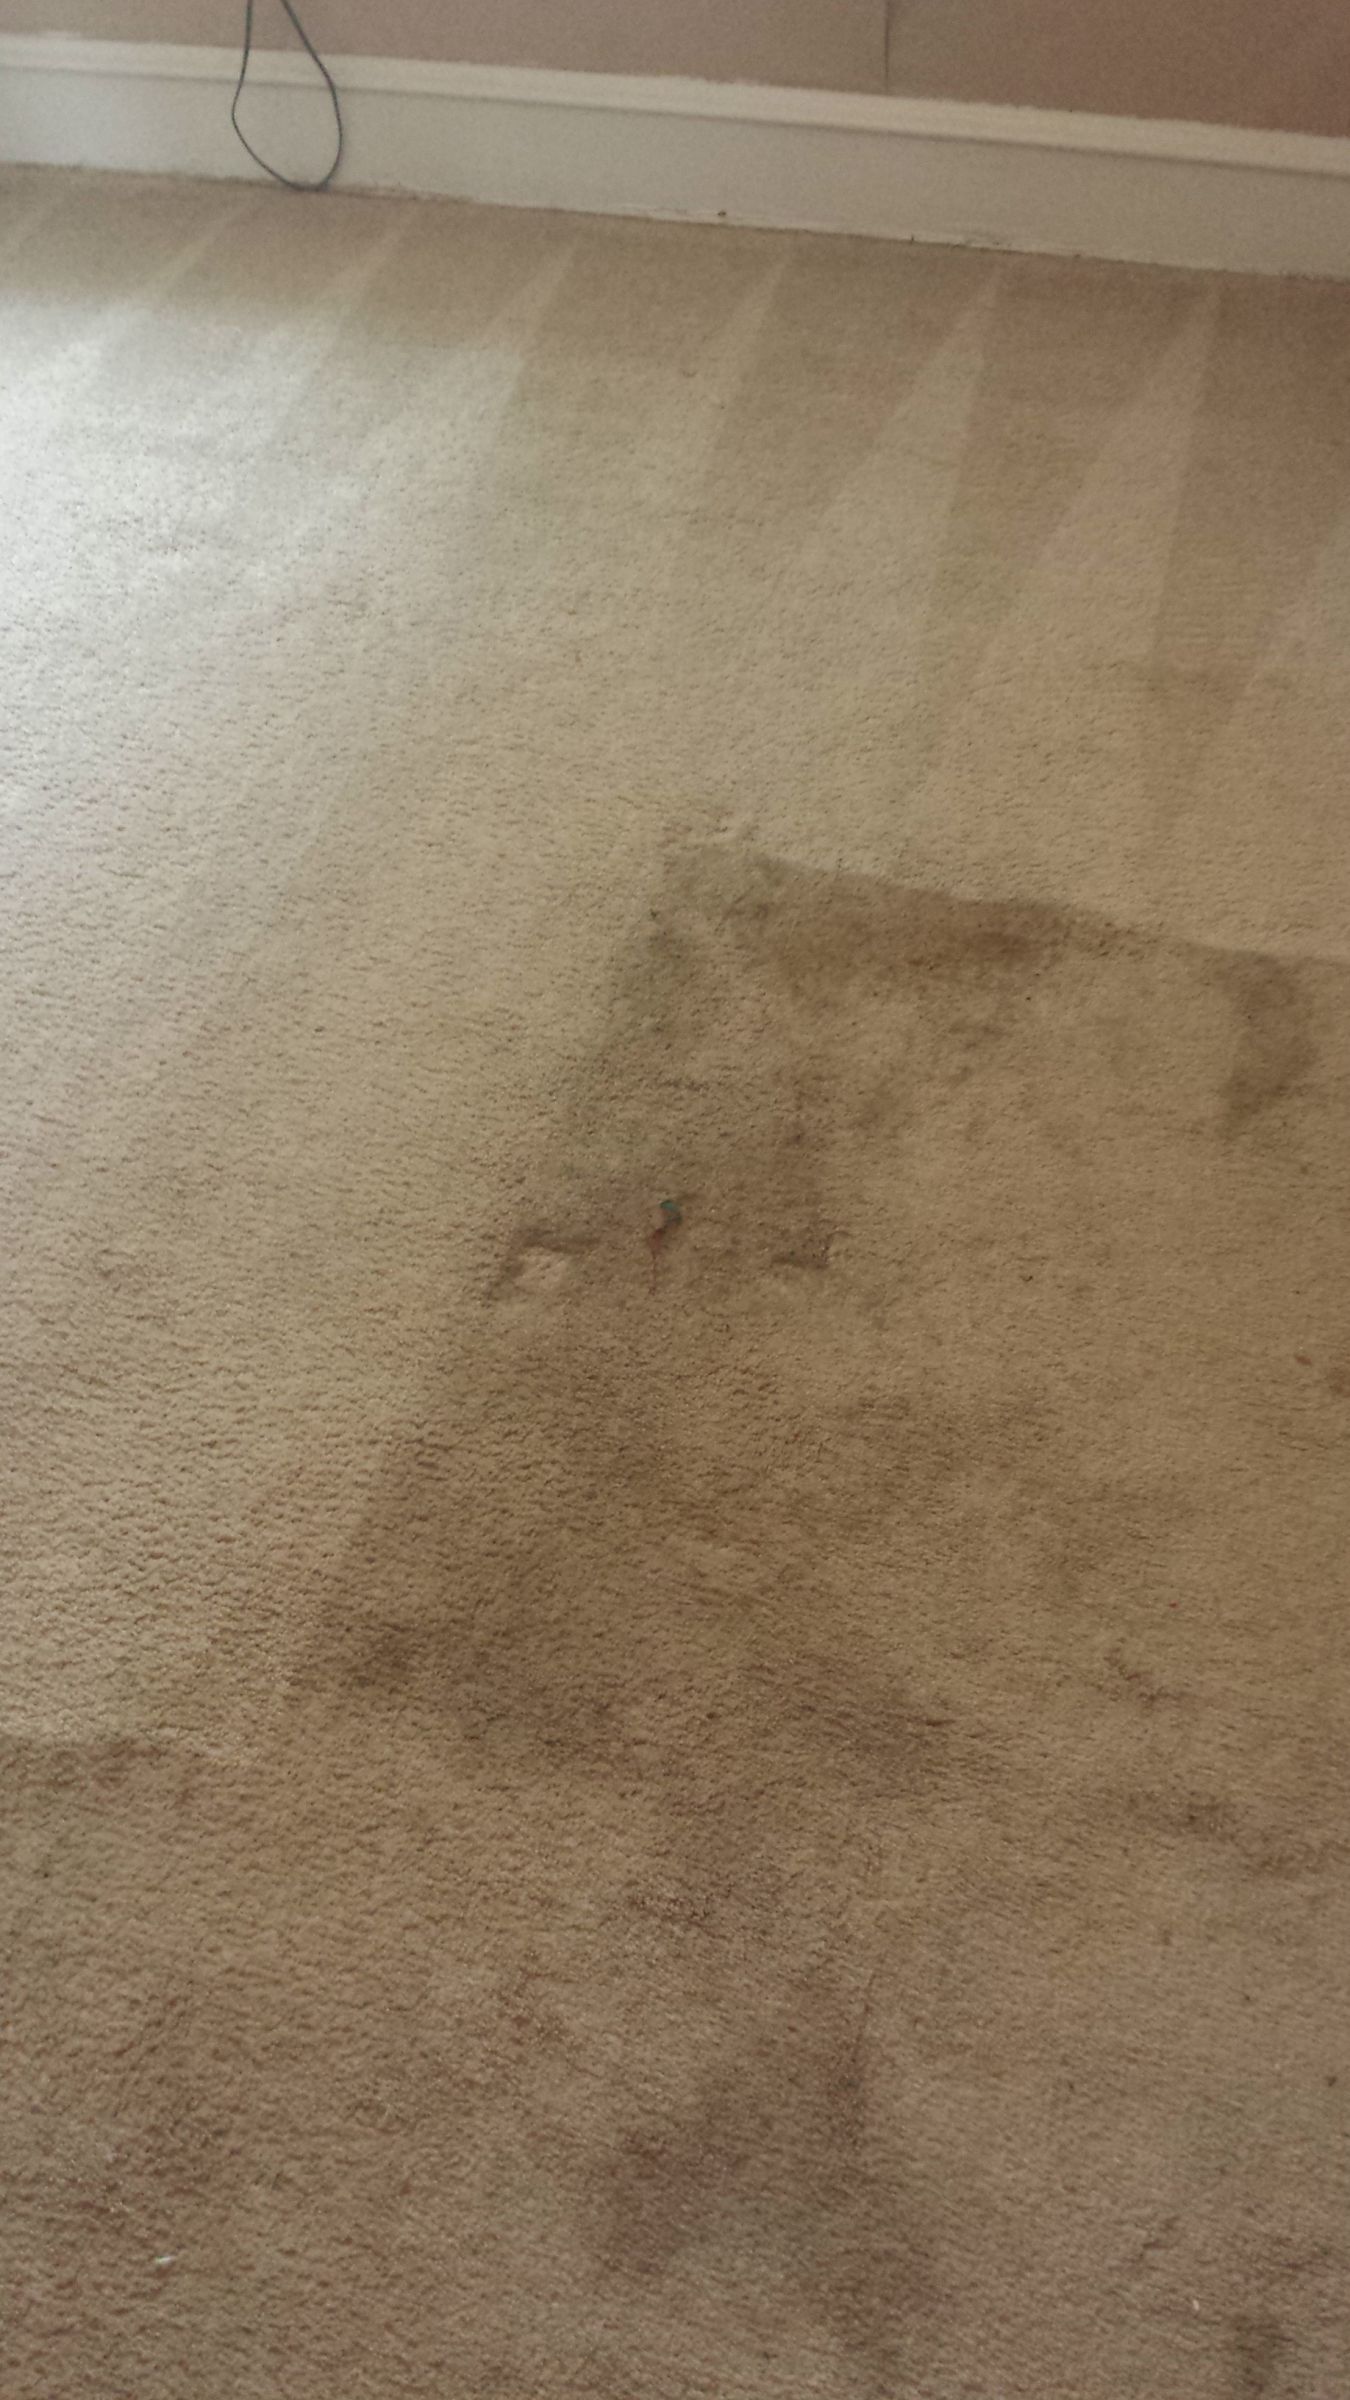 Get Help From Expert Marlton Voorhees Carpet Cleaner